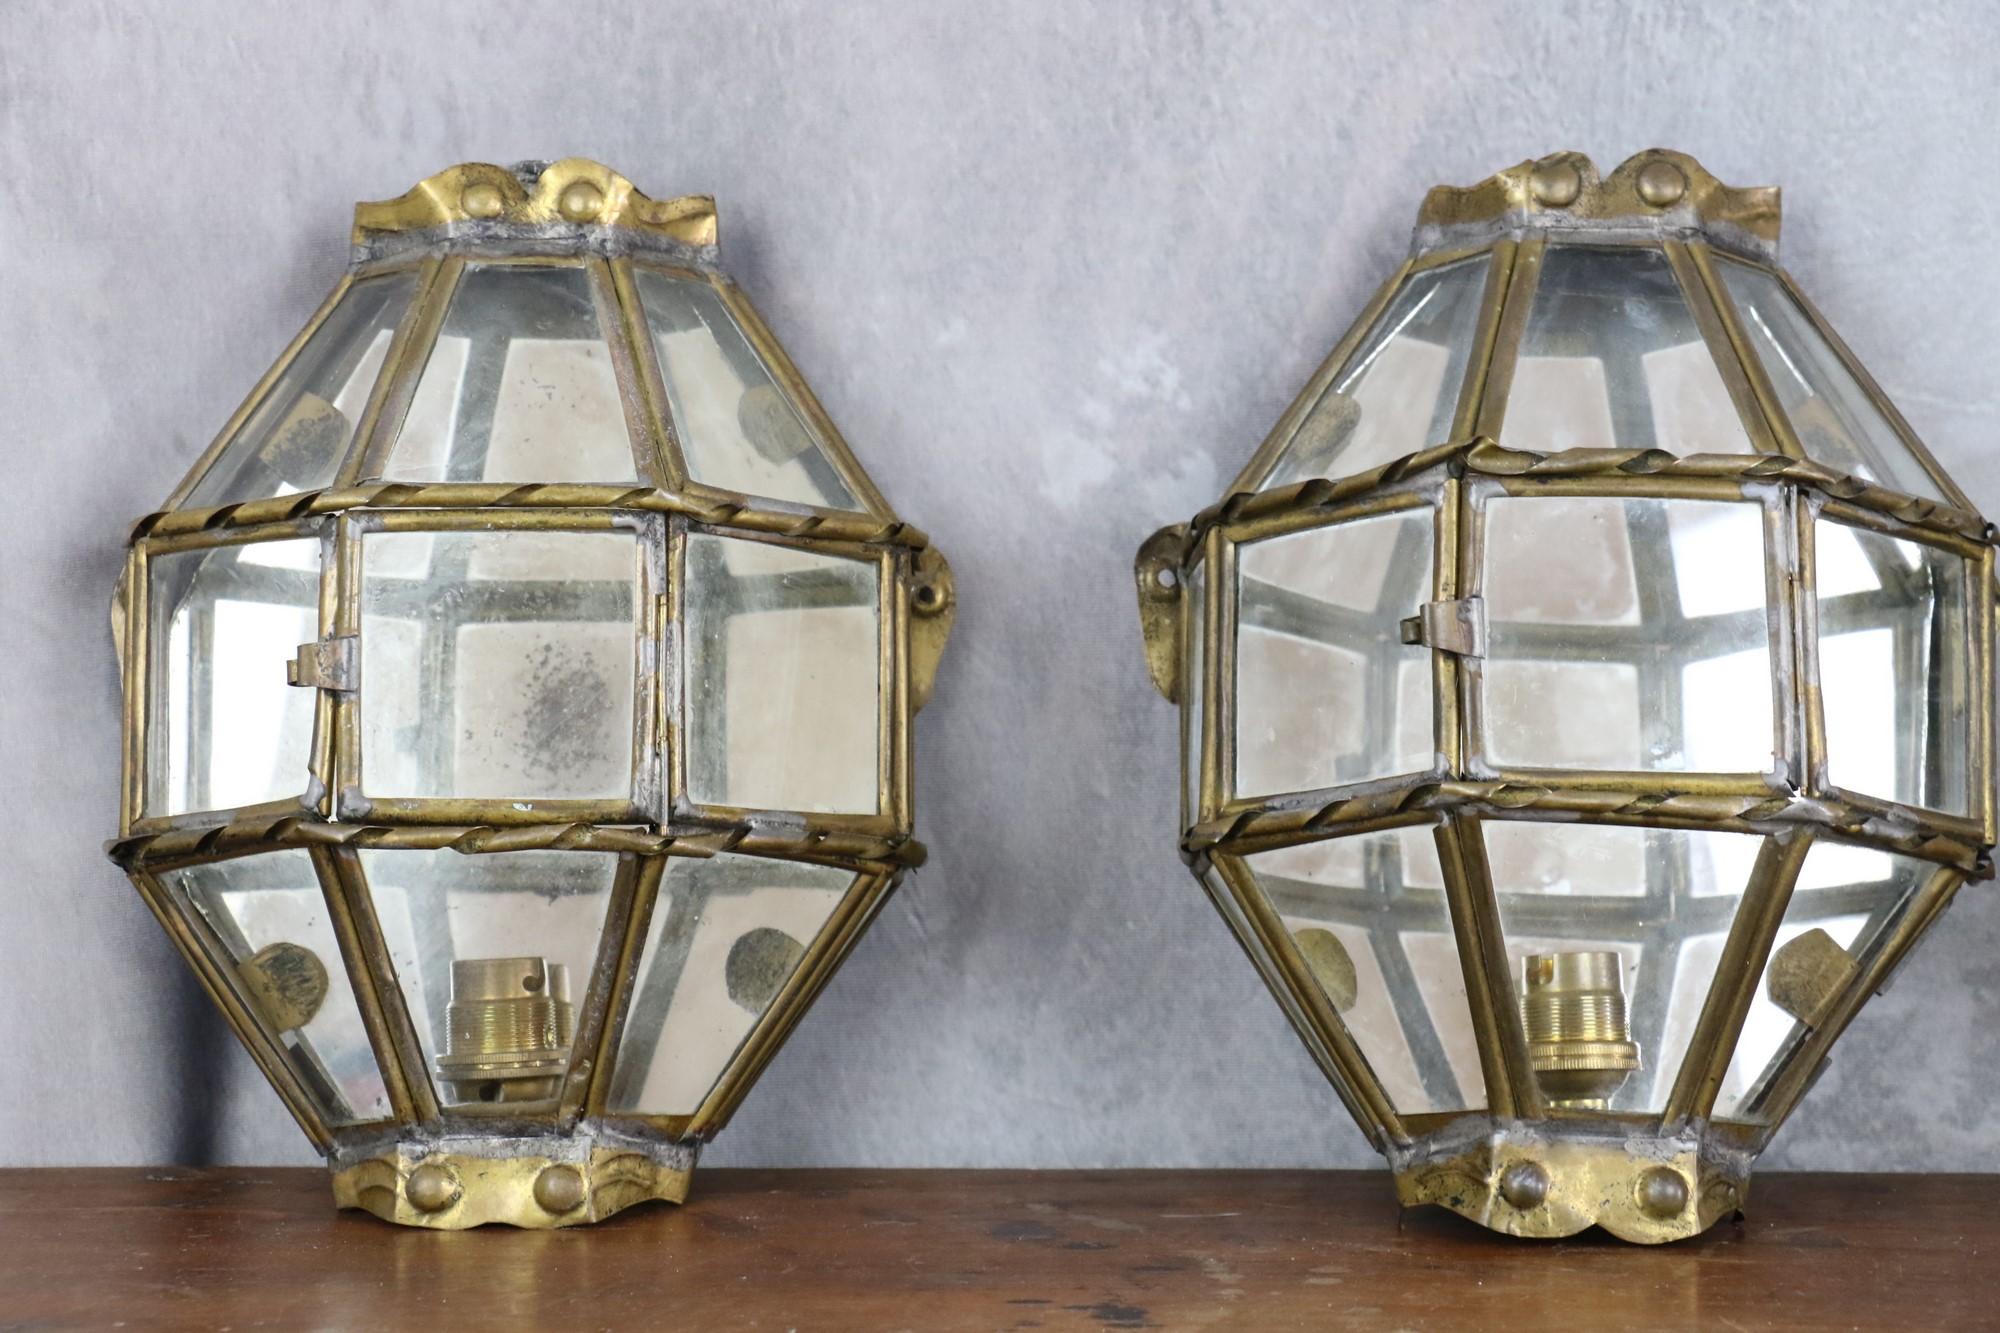 Trio aus handgefertigten Vintage-Wandleuchten aus Messing und Glas, 1940er Jahre, Frankreich

Schönes minimalistisches und geometrisches Design, das durch raffinierte Details wie den Spiegel auf der Rückseite des Reflektors und das gedrehte Messing